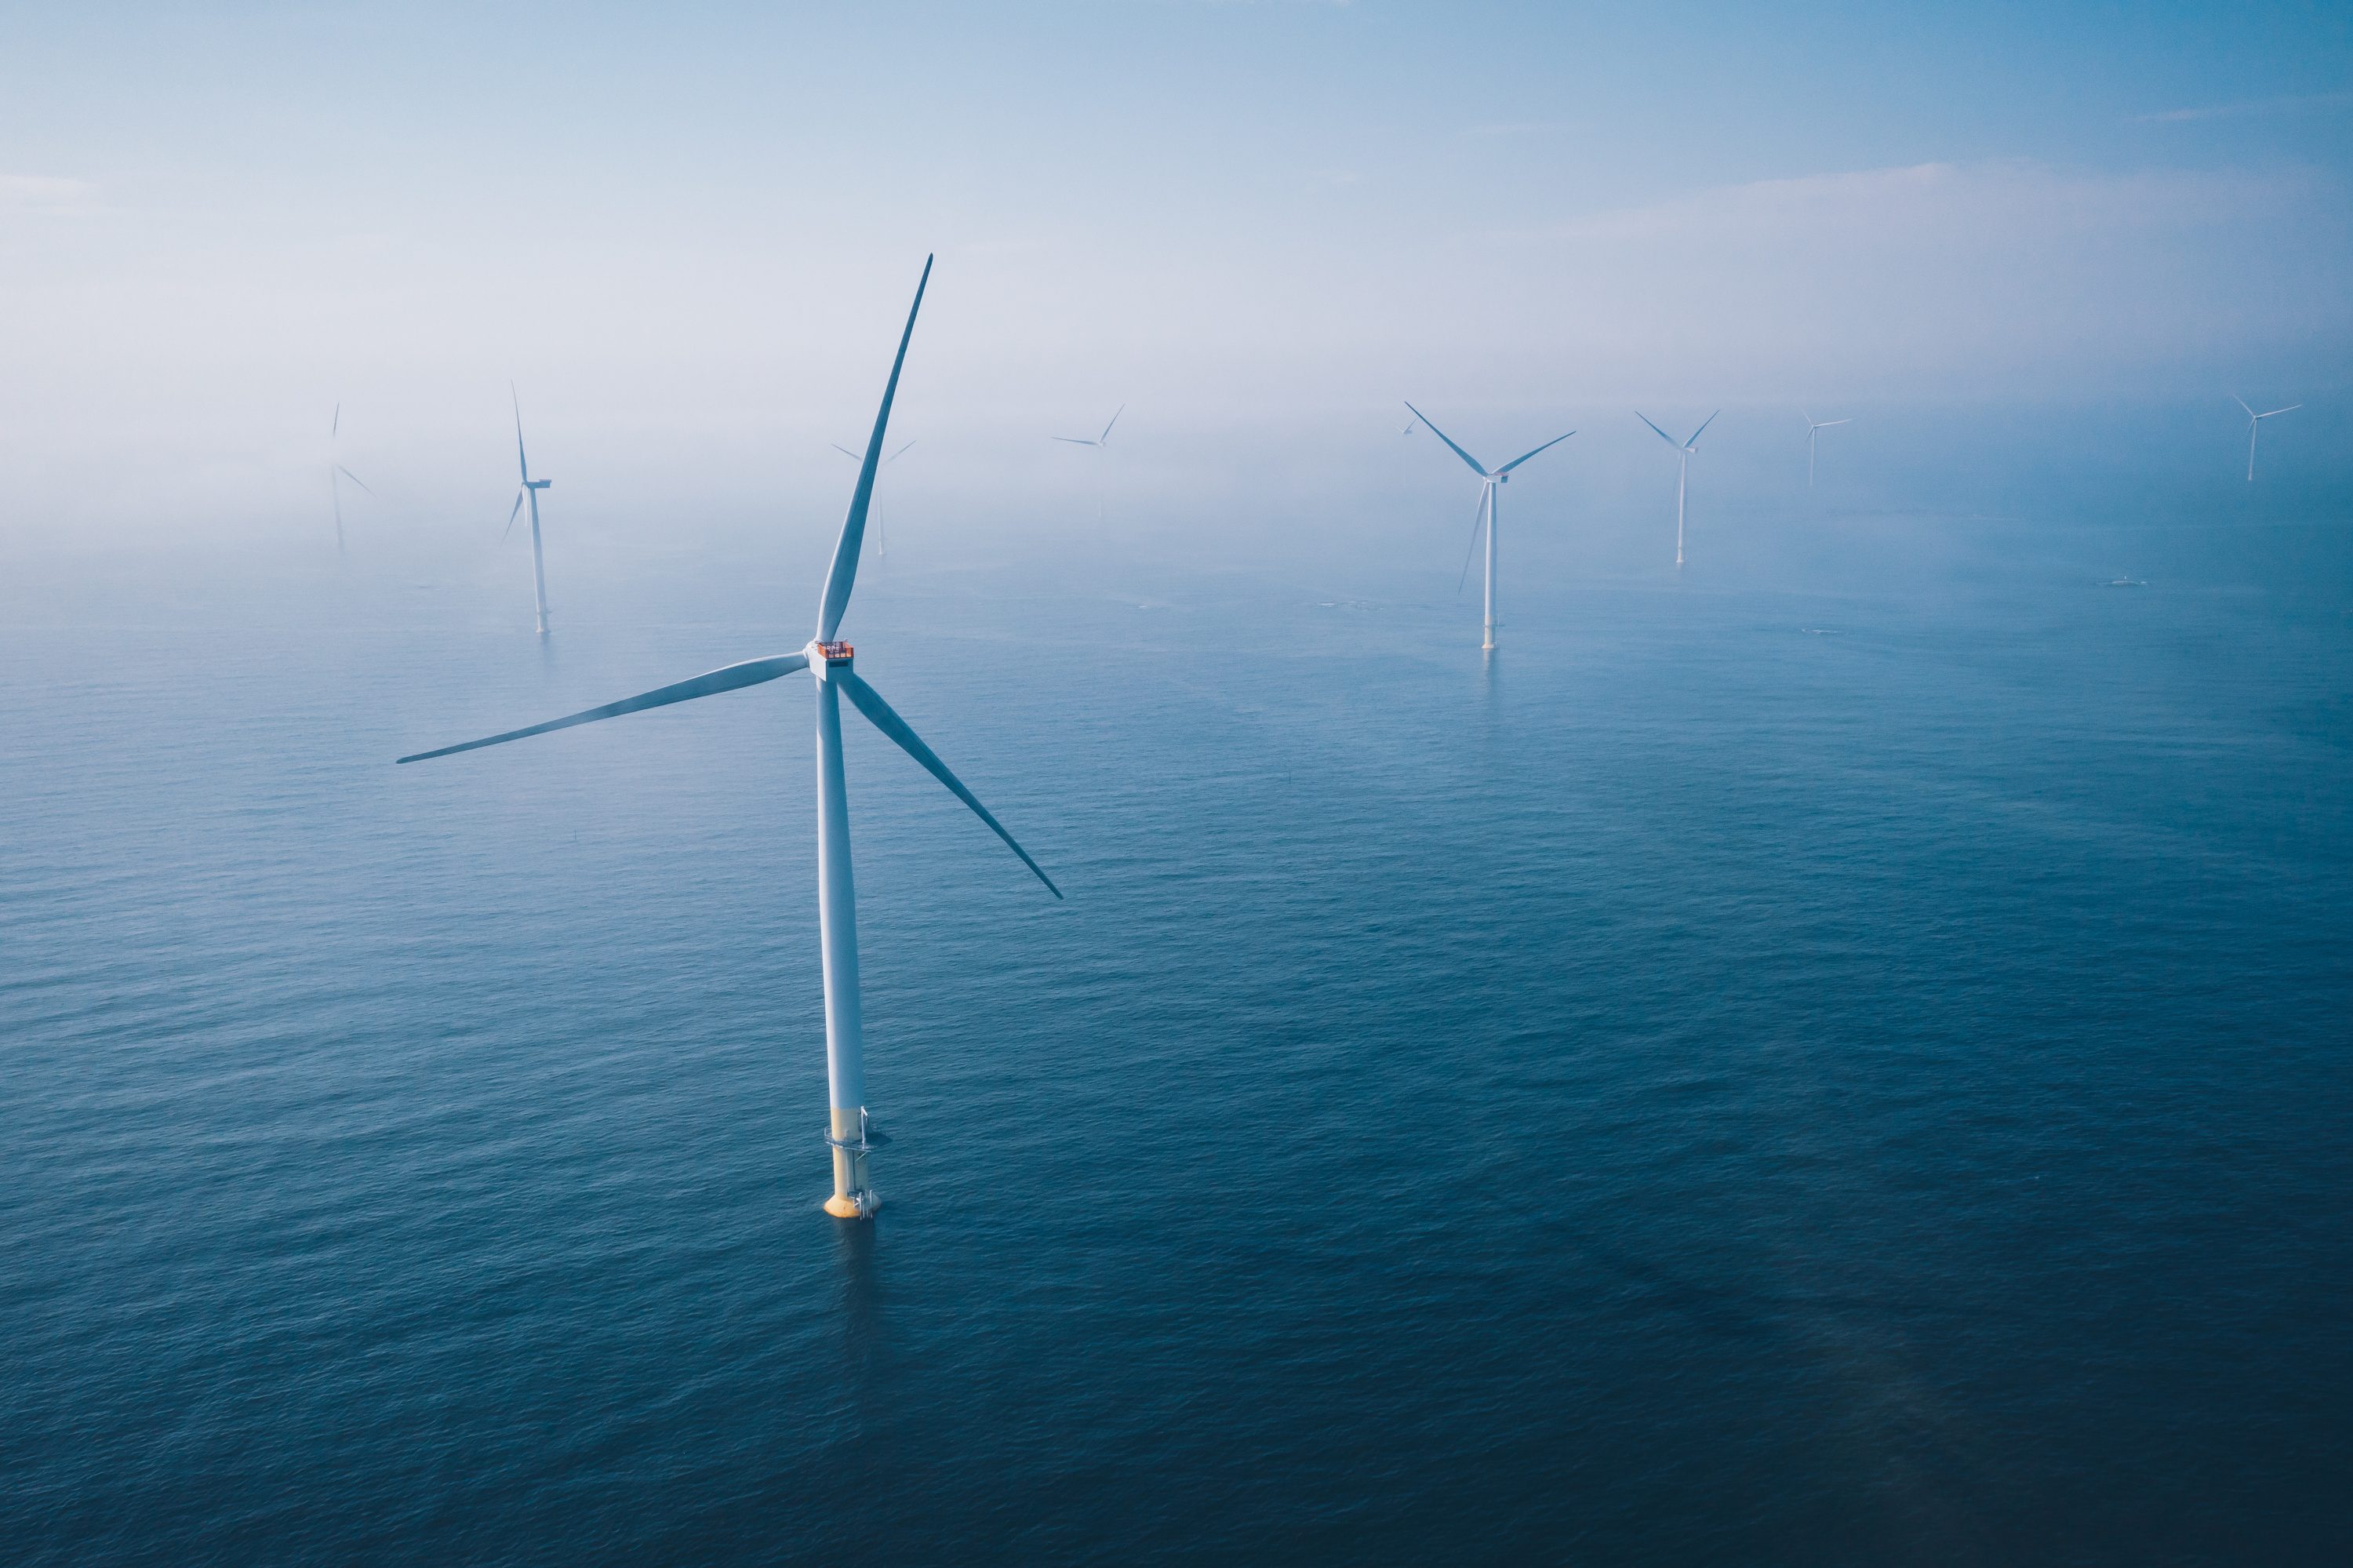 RWE parmi les vainqueurs de l'appel d'offres éolien mer de la baie